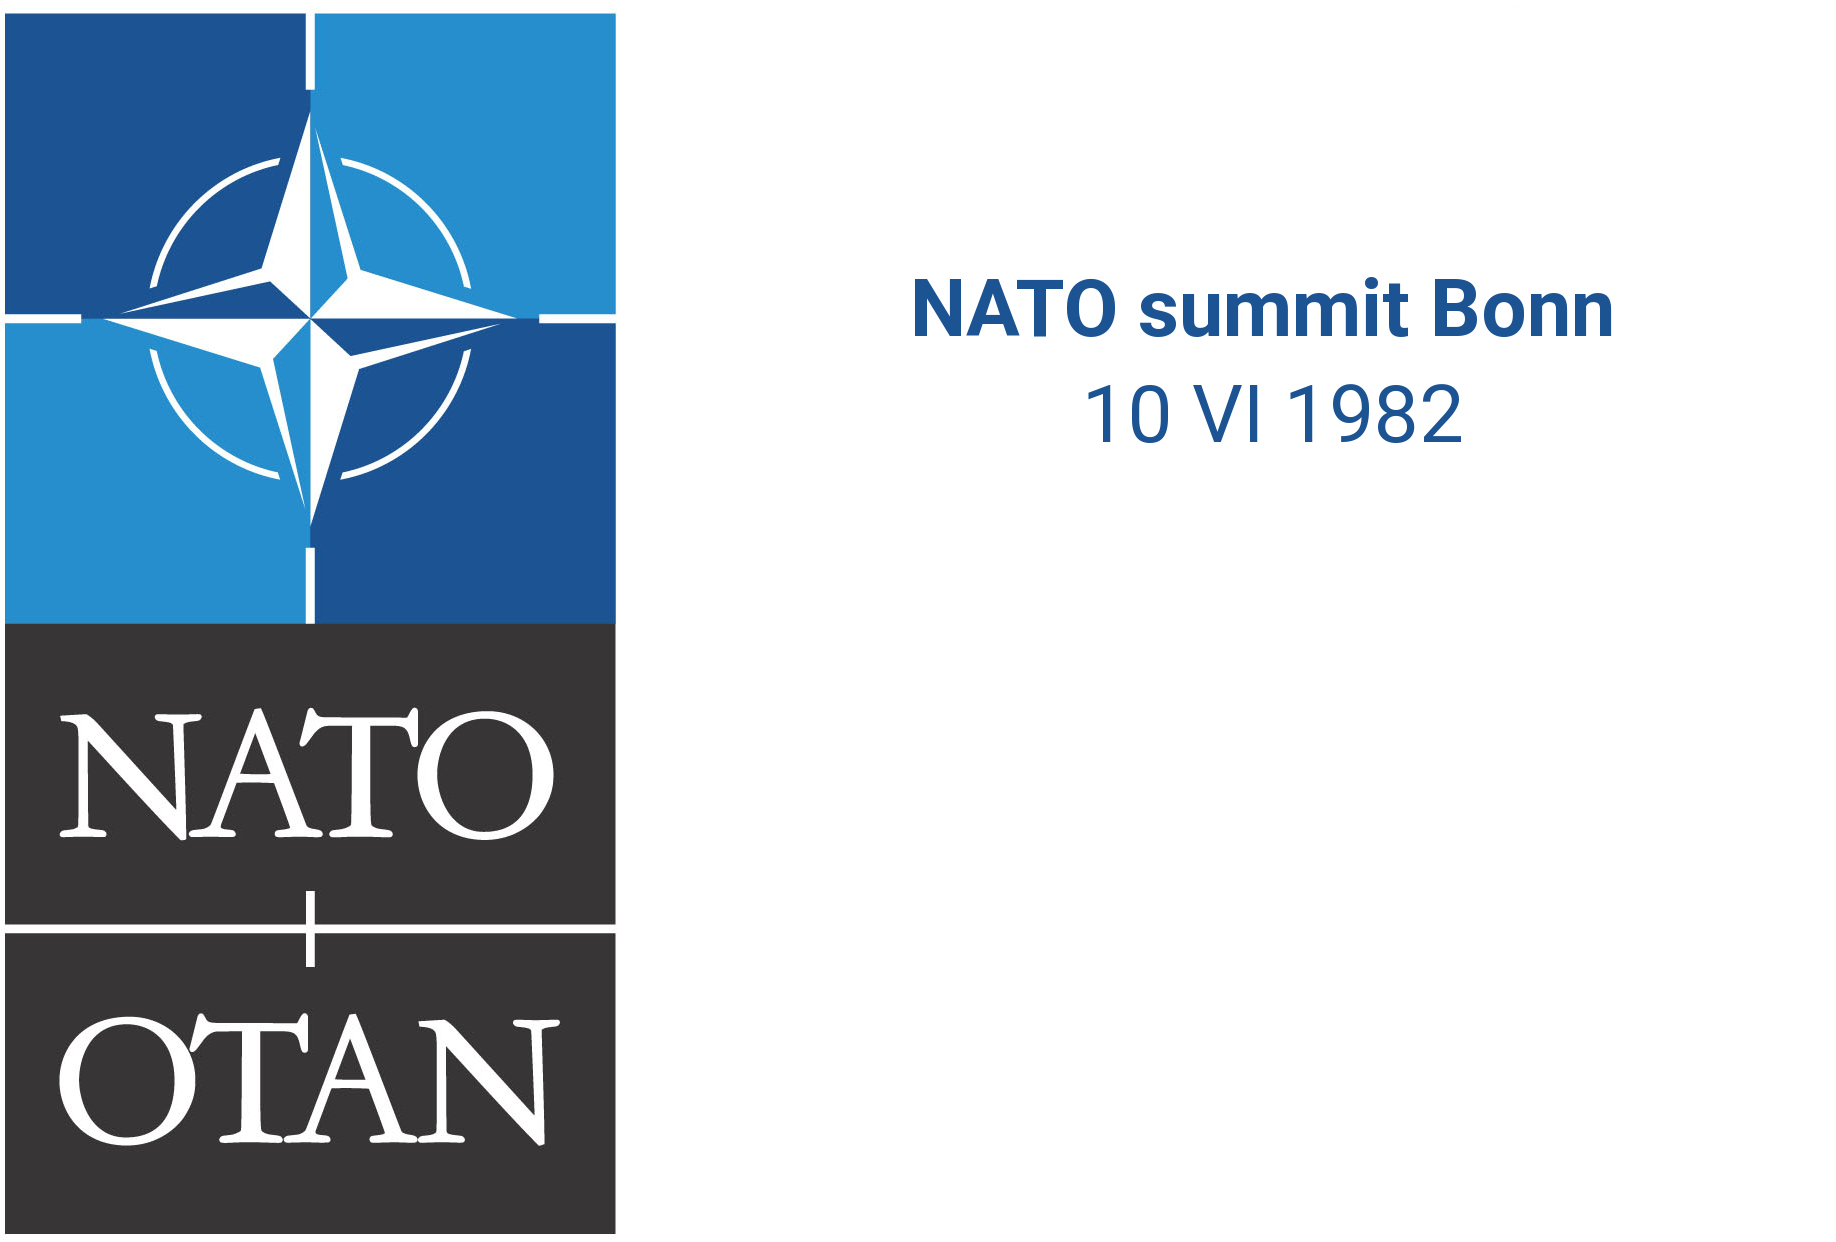 /assets/contentimages/NATO_summit_Bonn.jpg